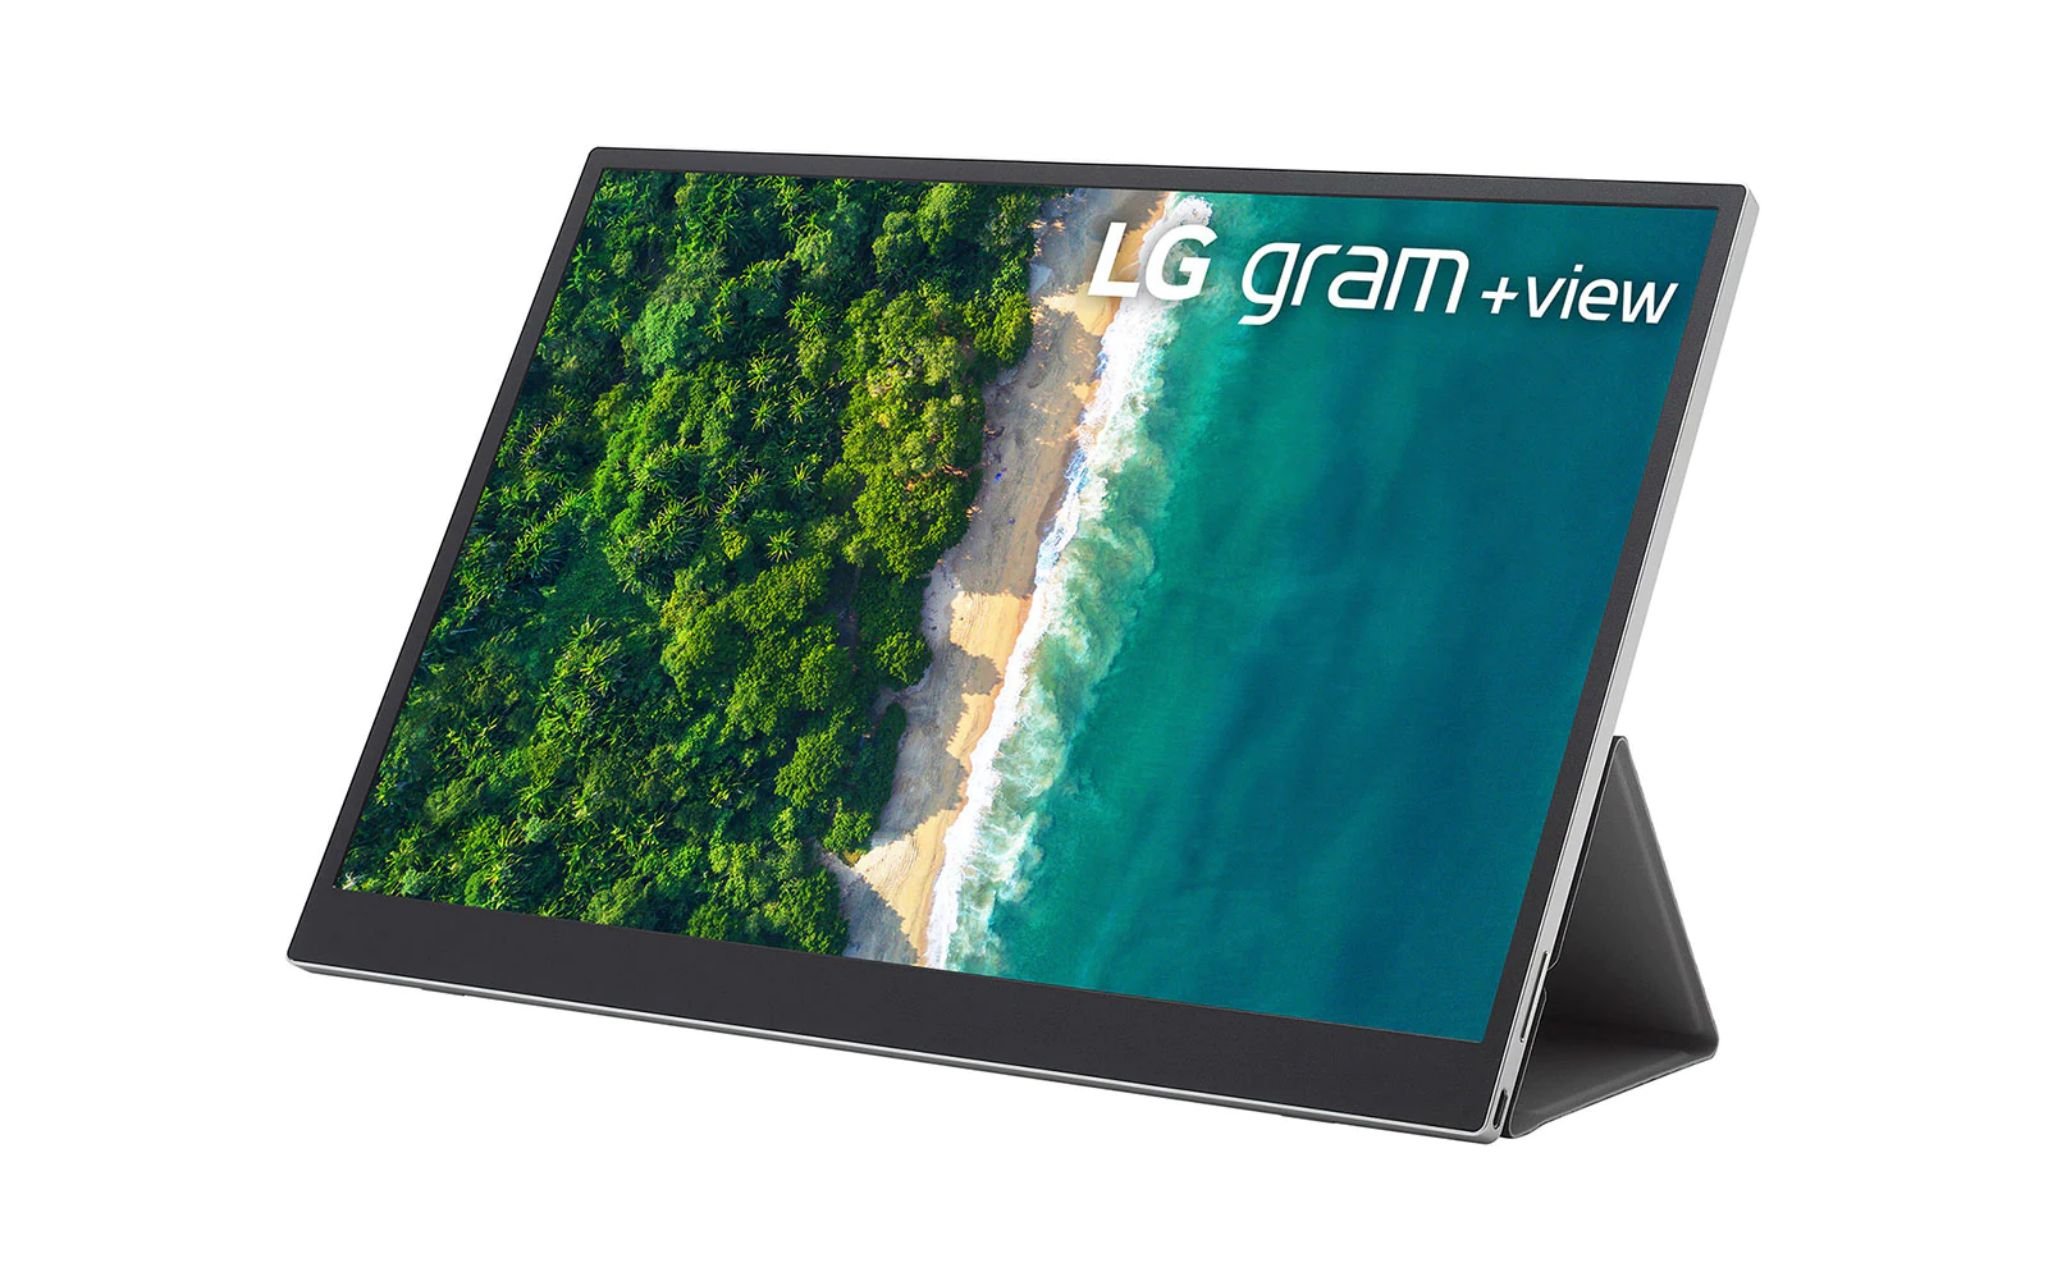 LG ra mắt màn hình di động LG gram +view: 16" phân giải 2K, 16:10, 99% DCI-P3